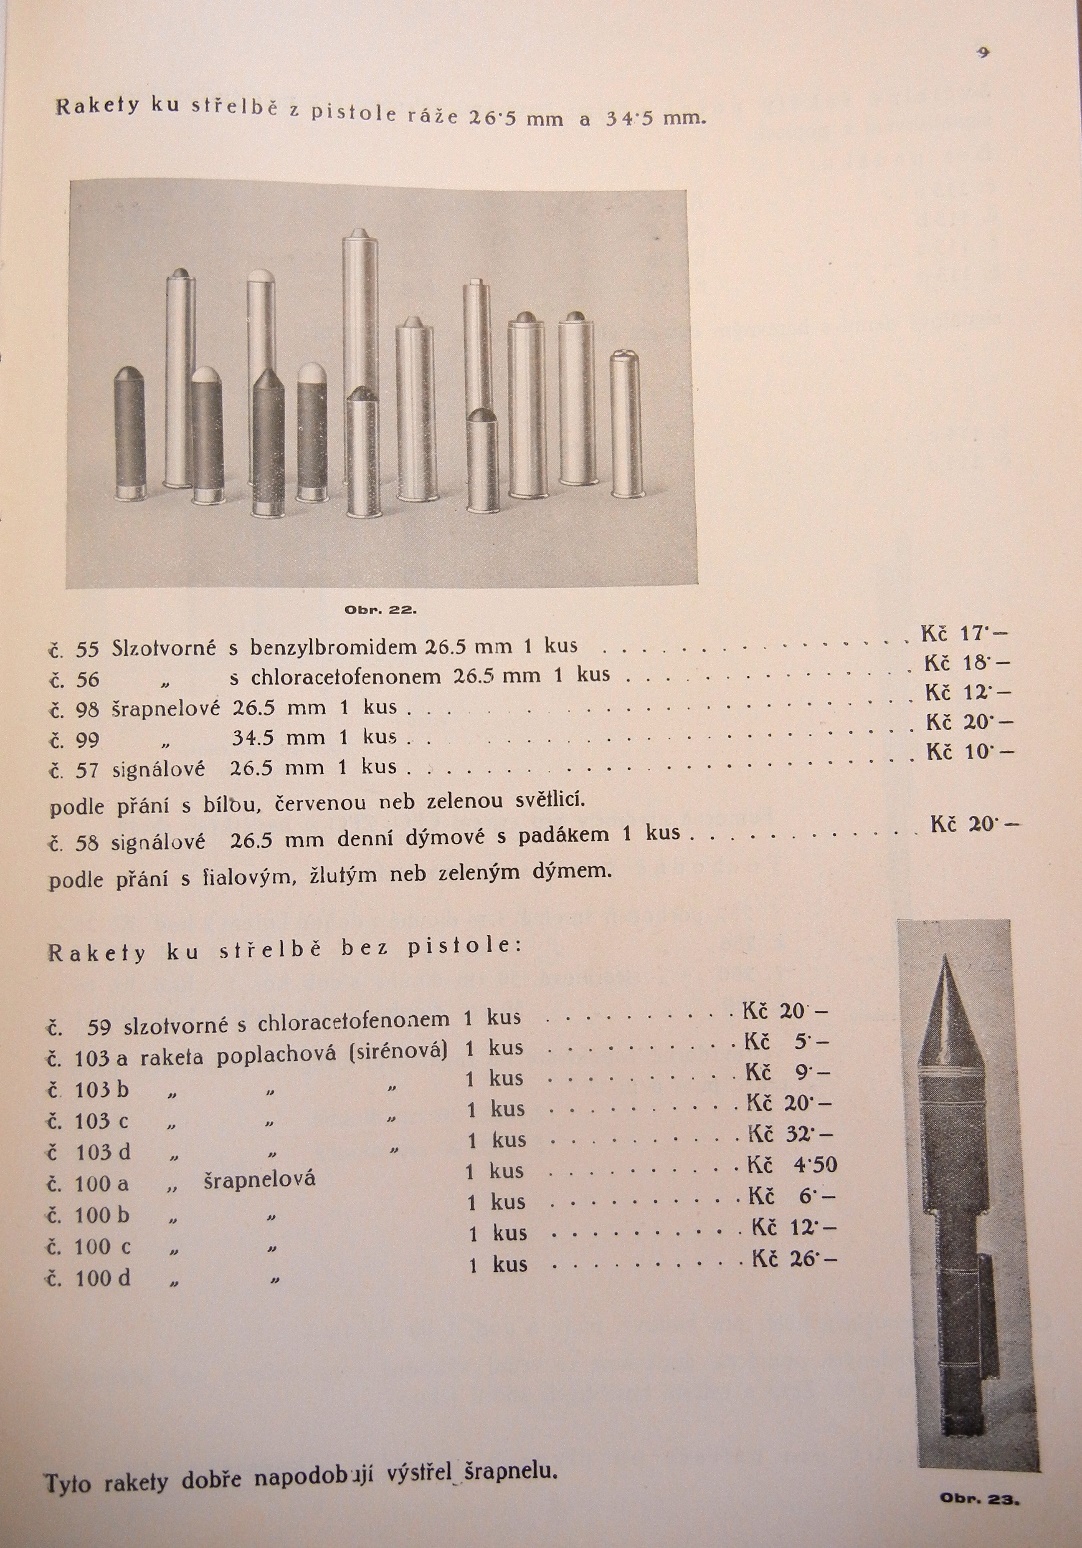 Firma nabízela i Rakety ku střelbě z pistole v ráži 26,5 mm 5 se dvěma typy náplní- benyzylbromidem nebo chloracetofenonem v ceně 18,- Kč. za kus.